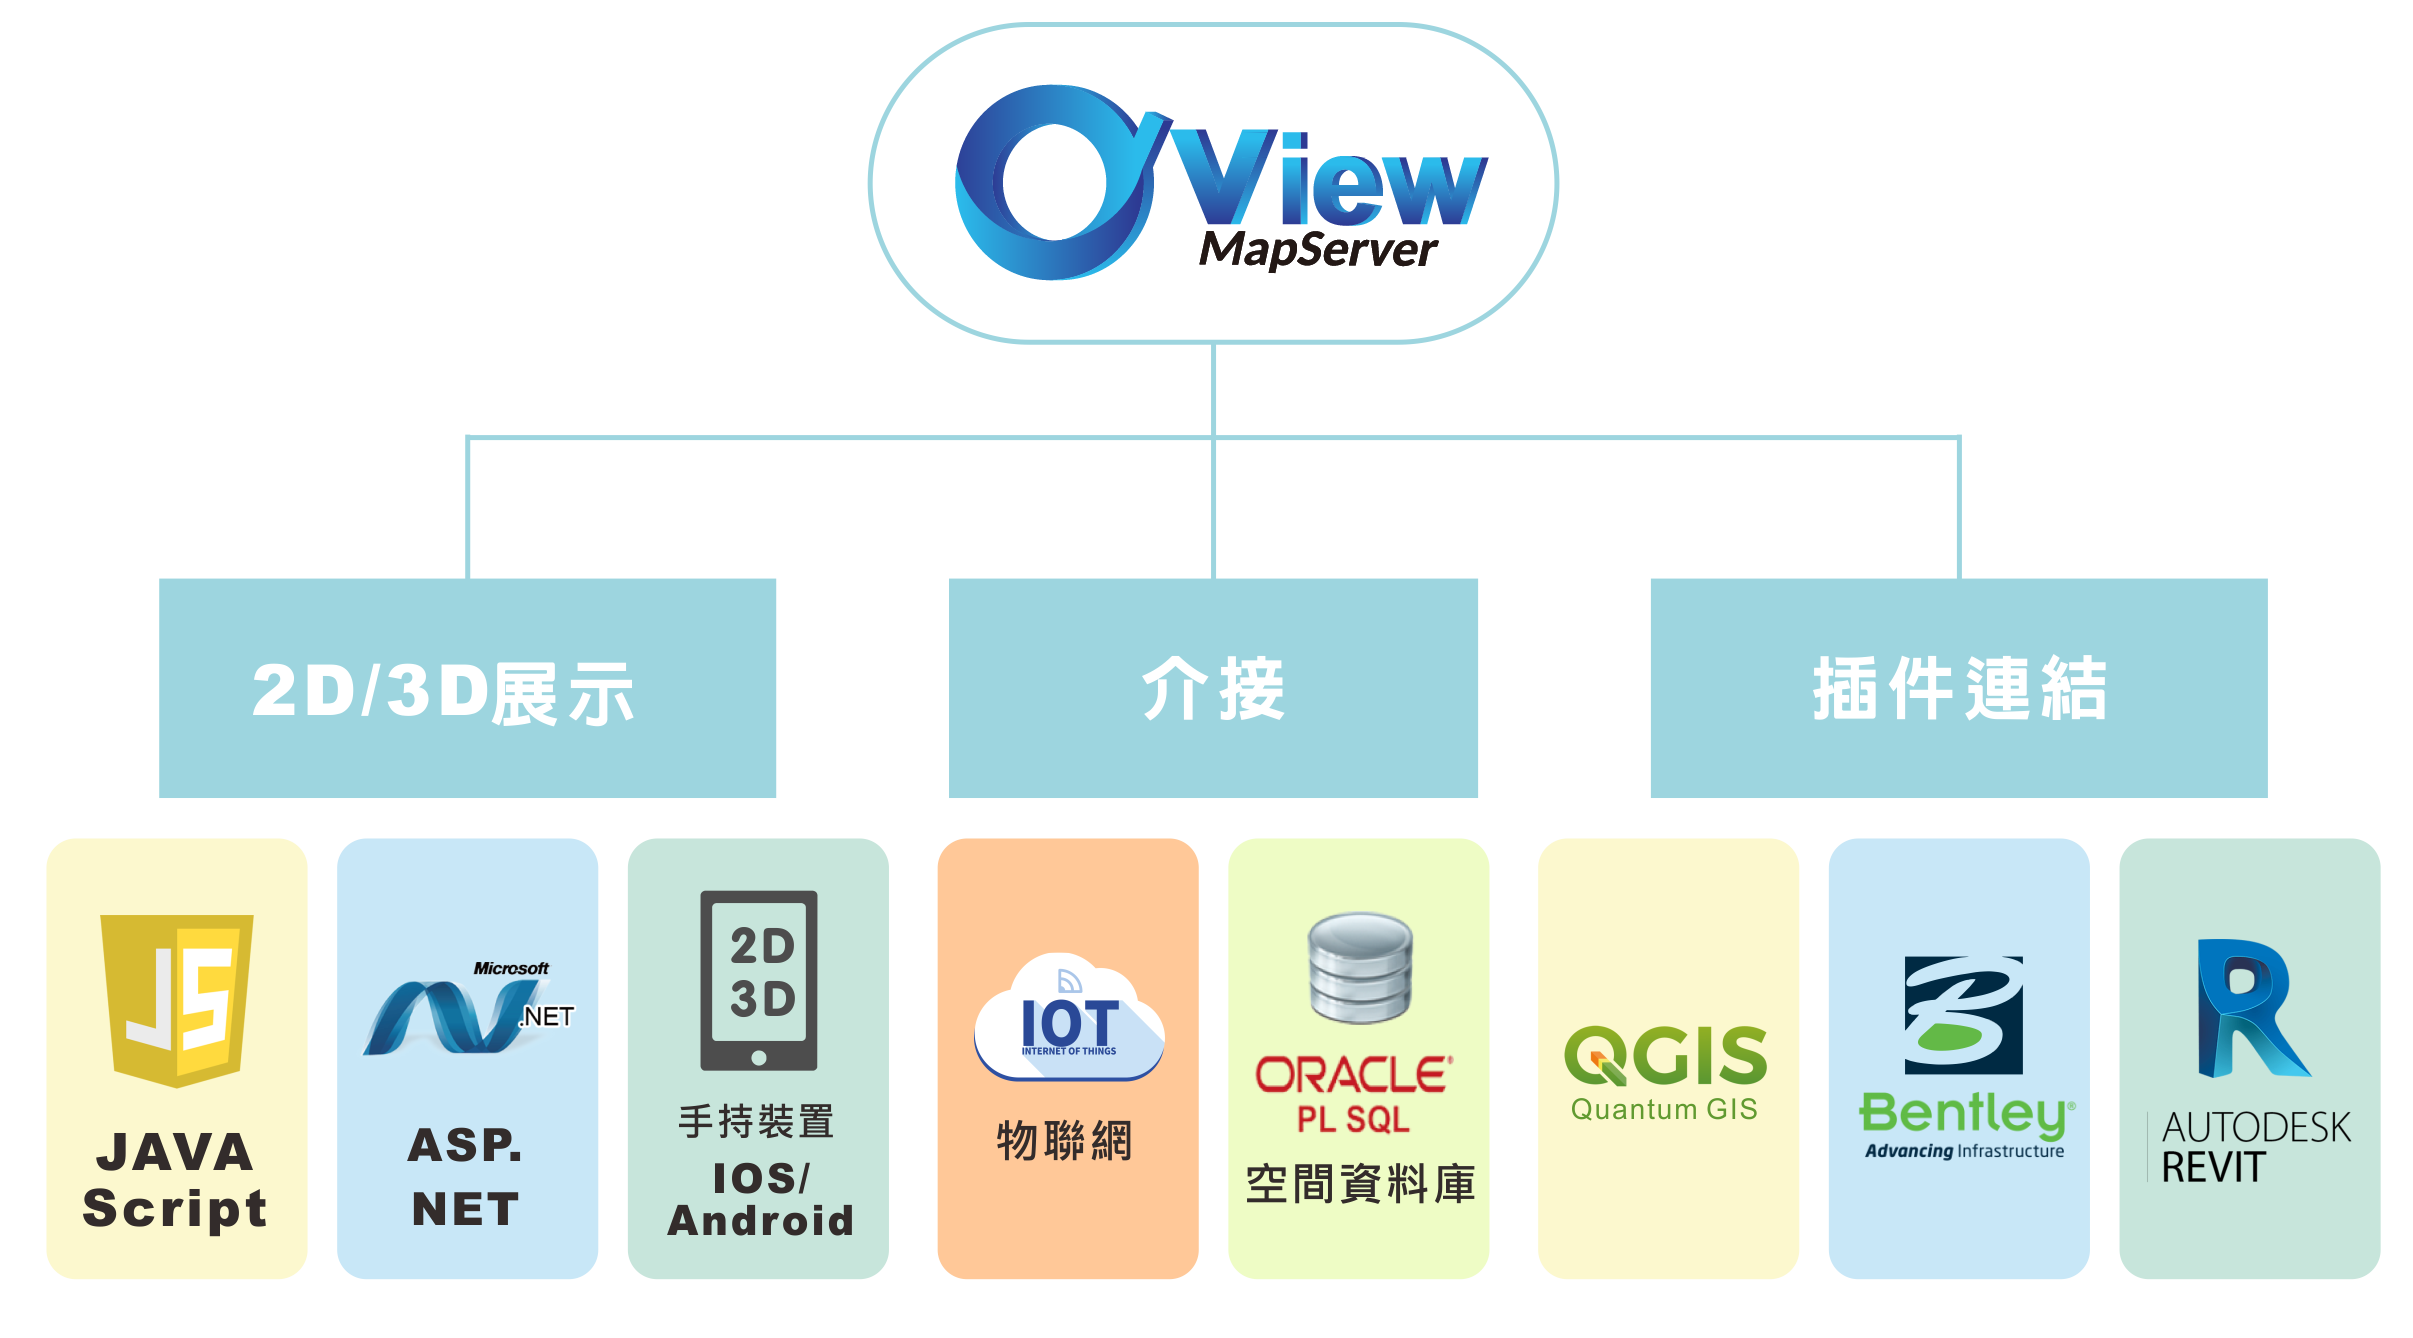 O'View MapServer